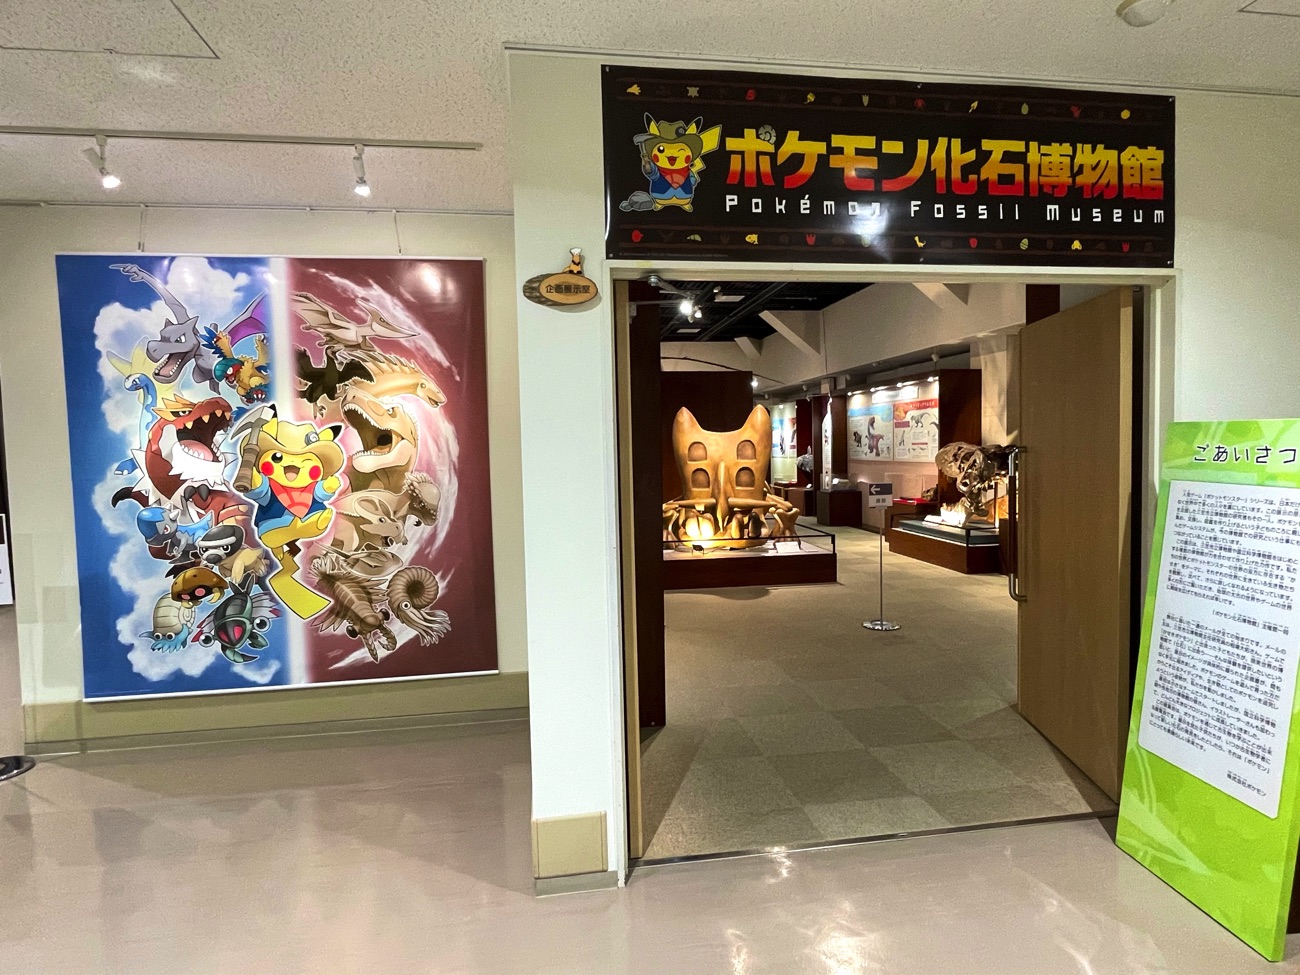 「ポケモン化石博物館」の入口